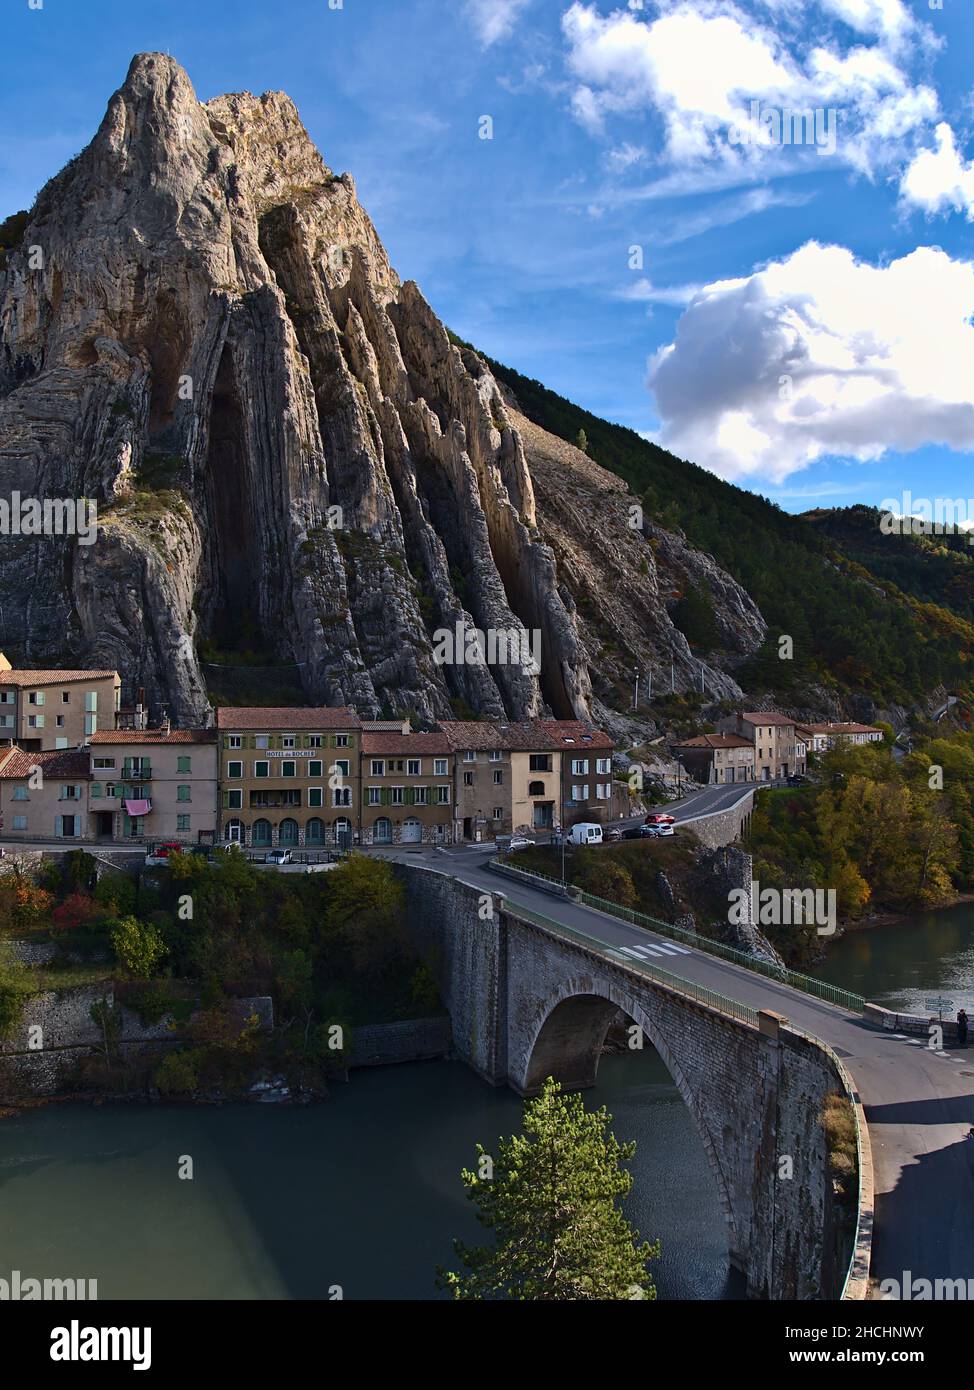 Impresionante vista de la famosa montaña Rocher de la Baume en el pueblo de Sisteron, Provenza, Francia en la temporada de otoño con puente y casas antiguas. Foto de stock